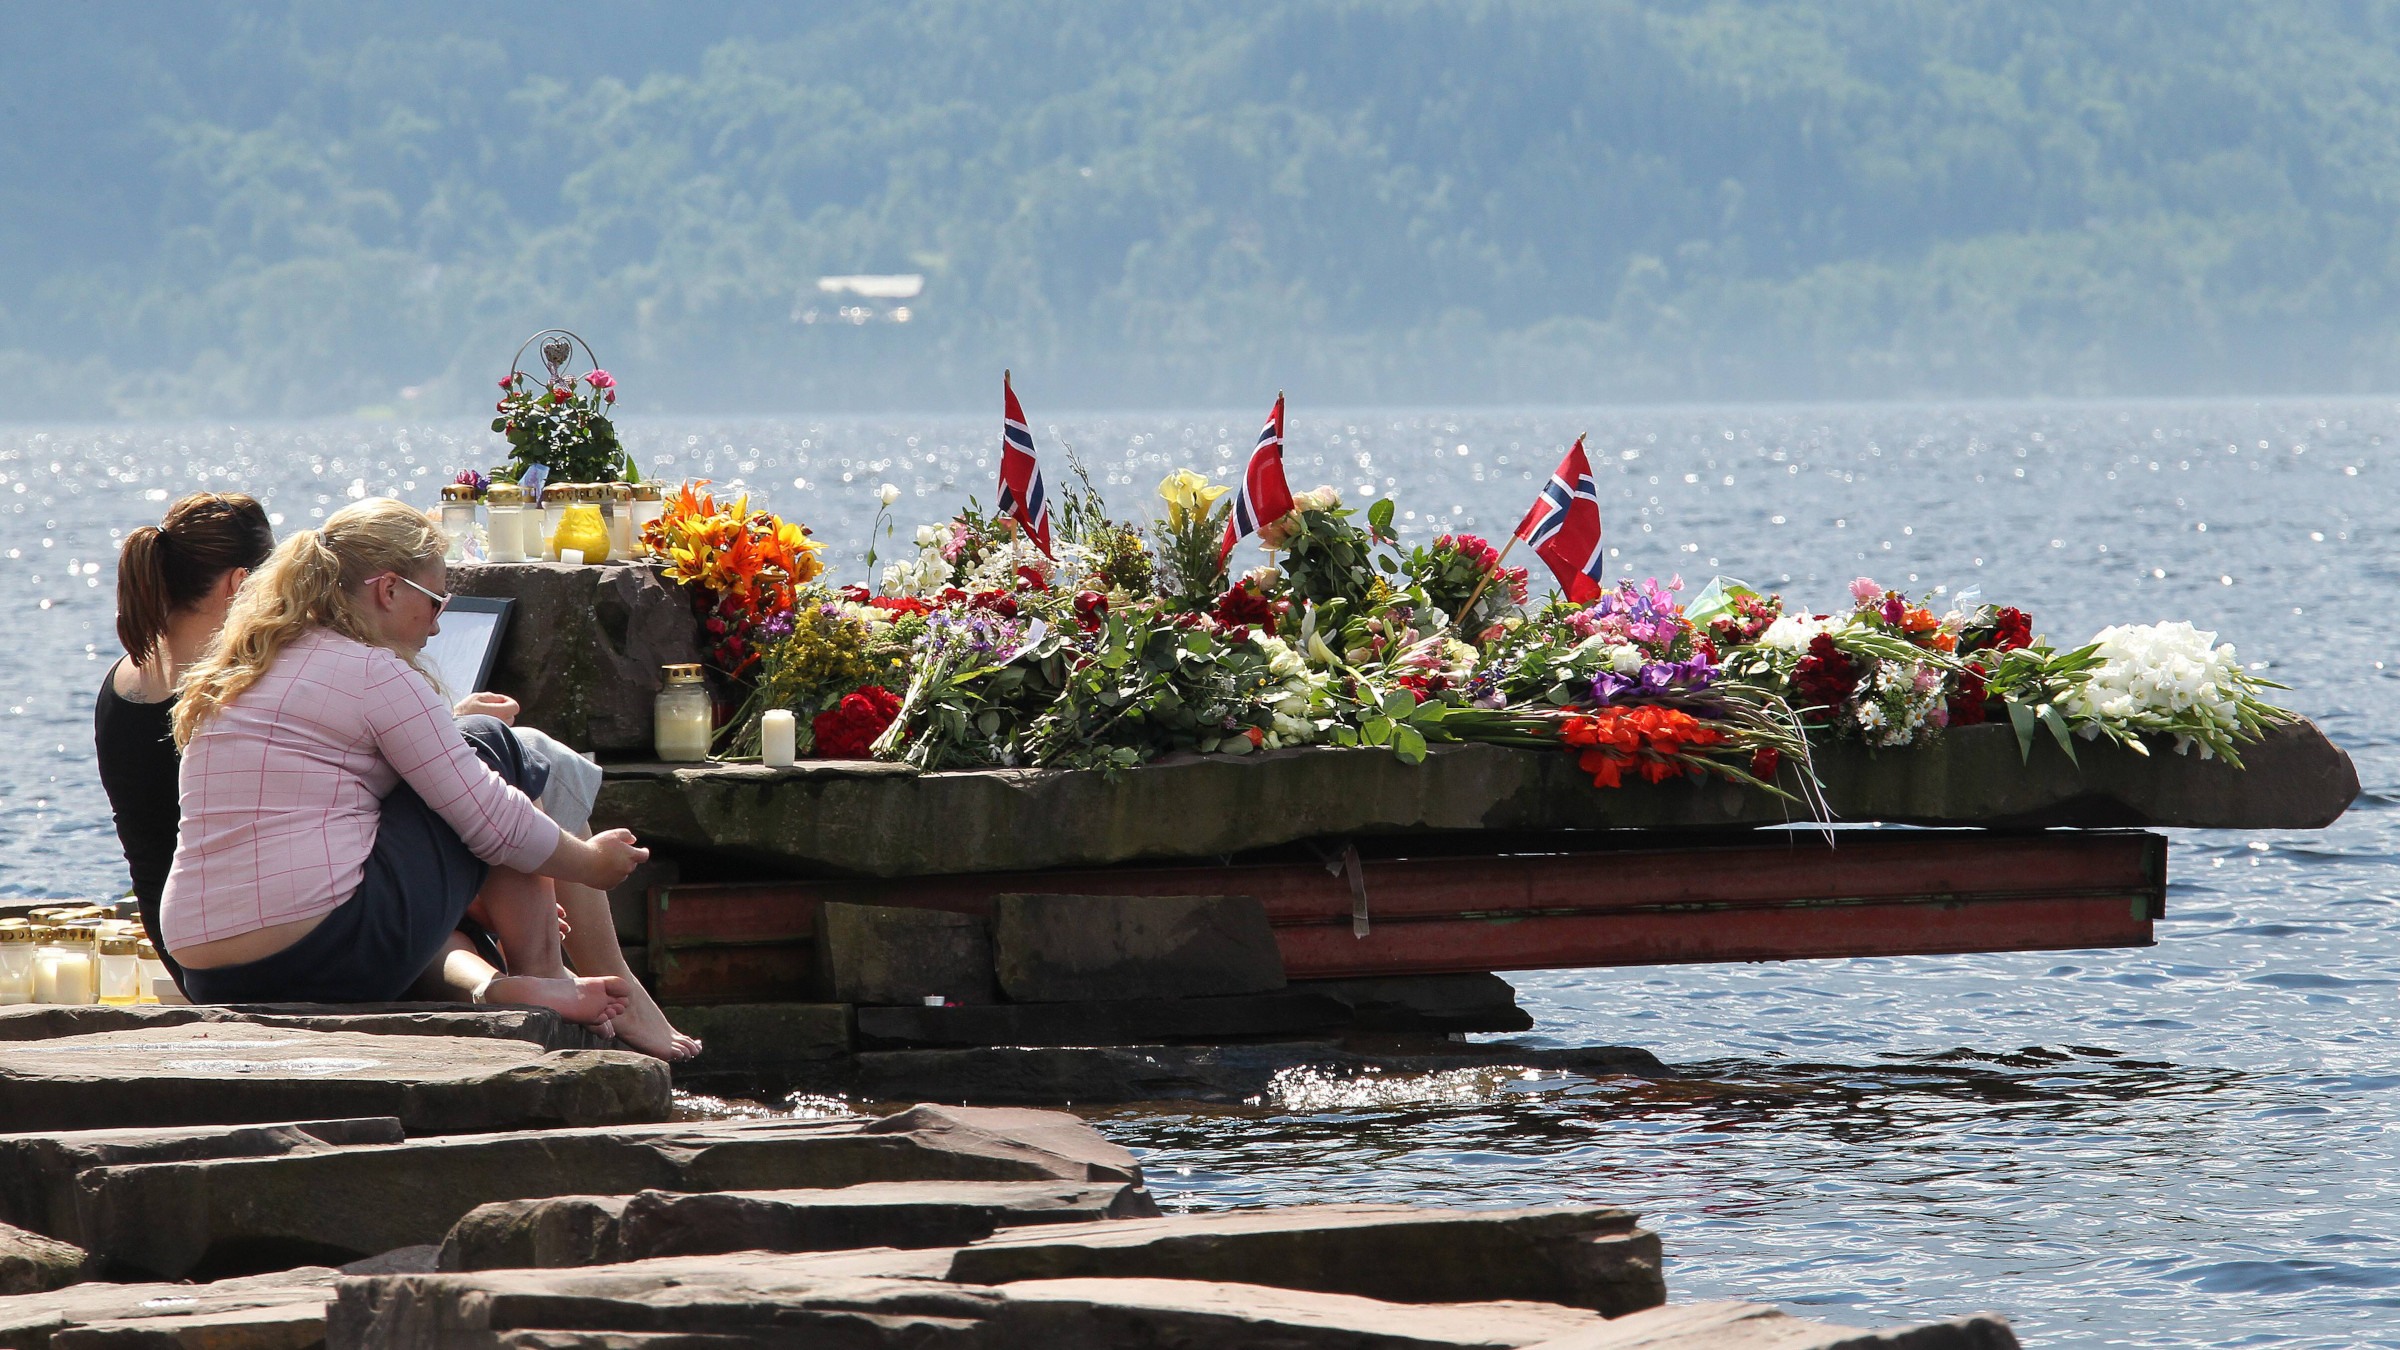 Zwei Personen sitzen am Wasser und trauern um die Opfer des rechtsextremistischenAnschlags auf Utøya.